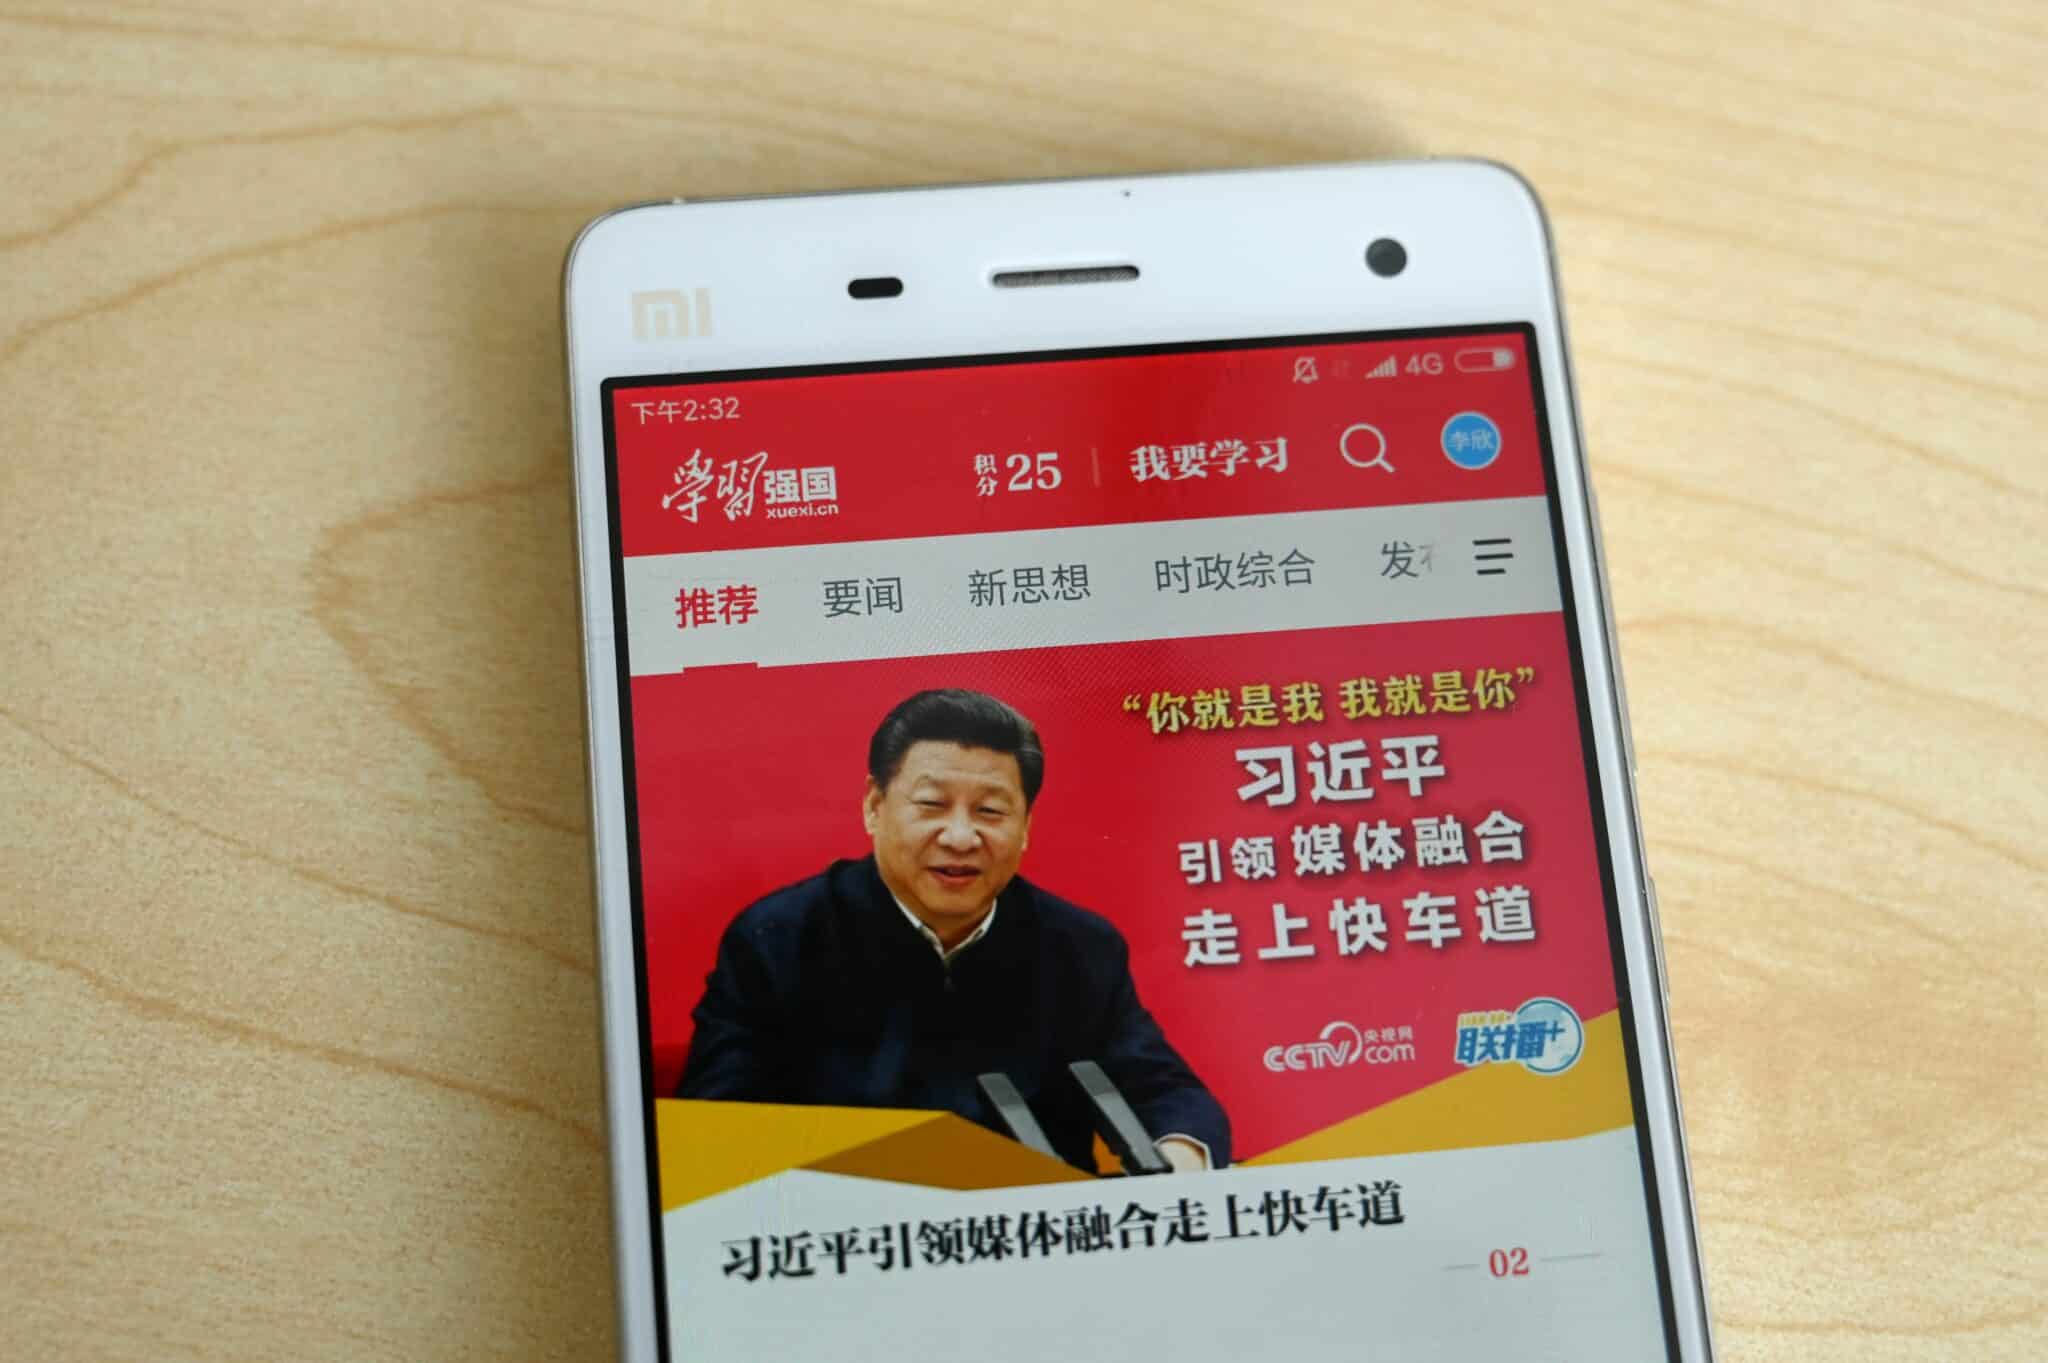 الصين تتجسس على مواطنيها عبر تطبيق الحزب الشيوعي